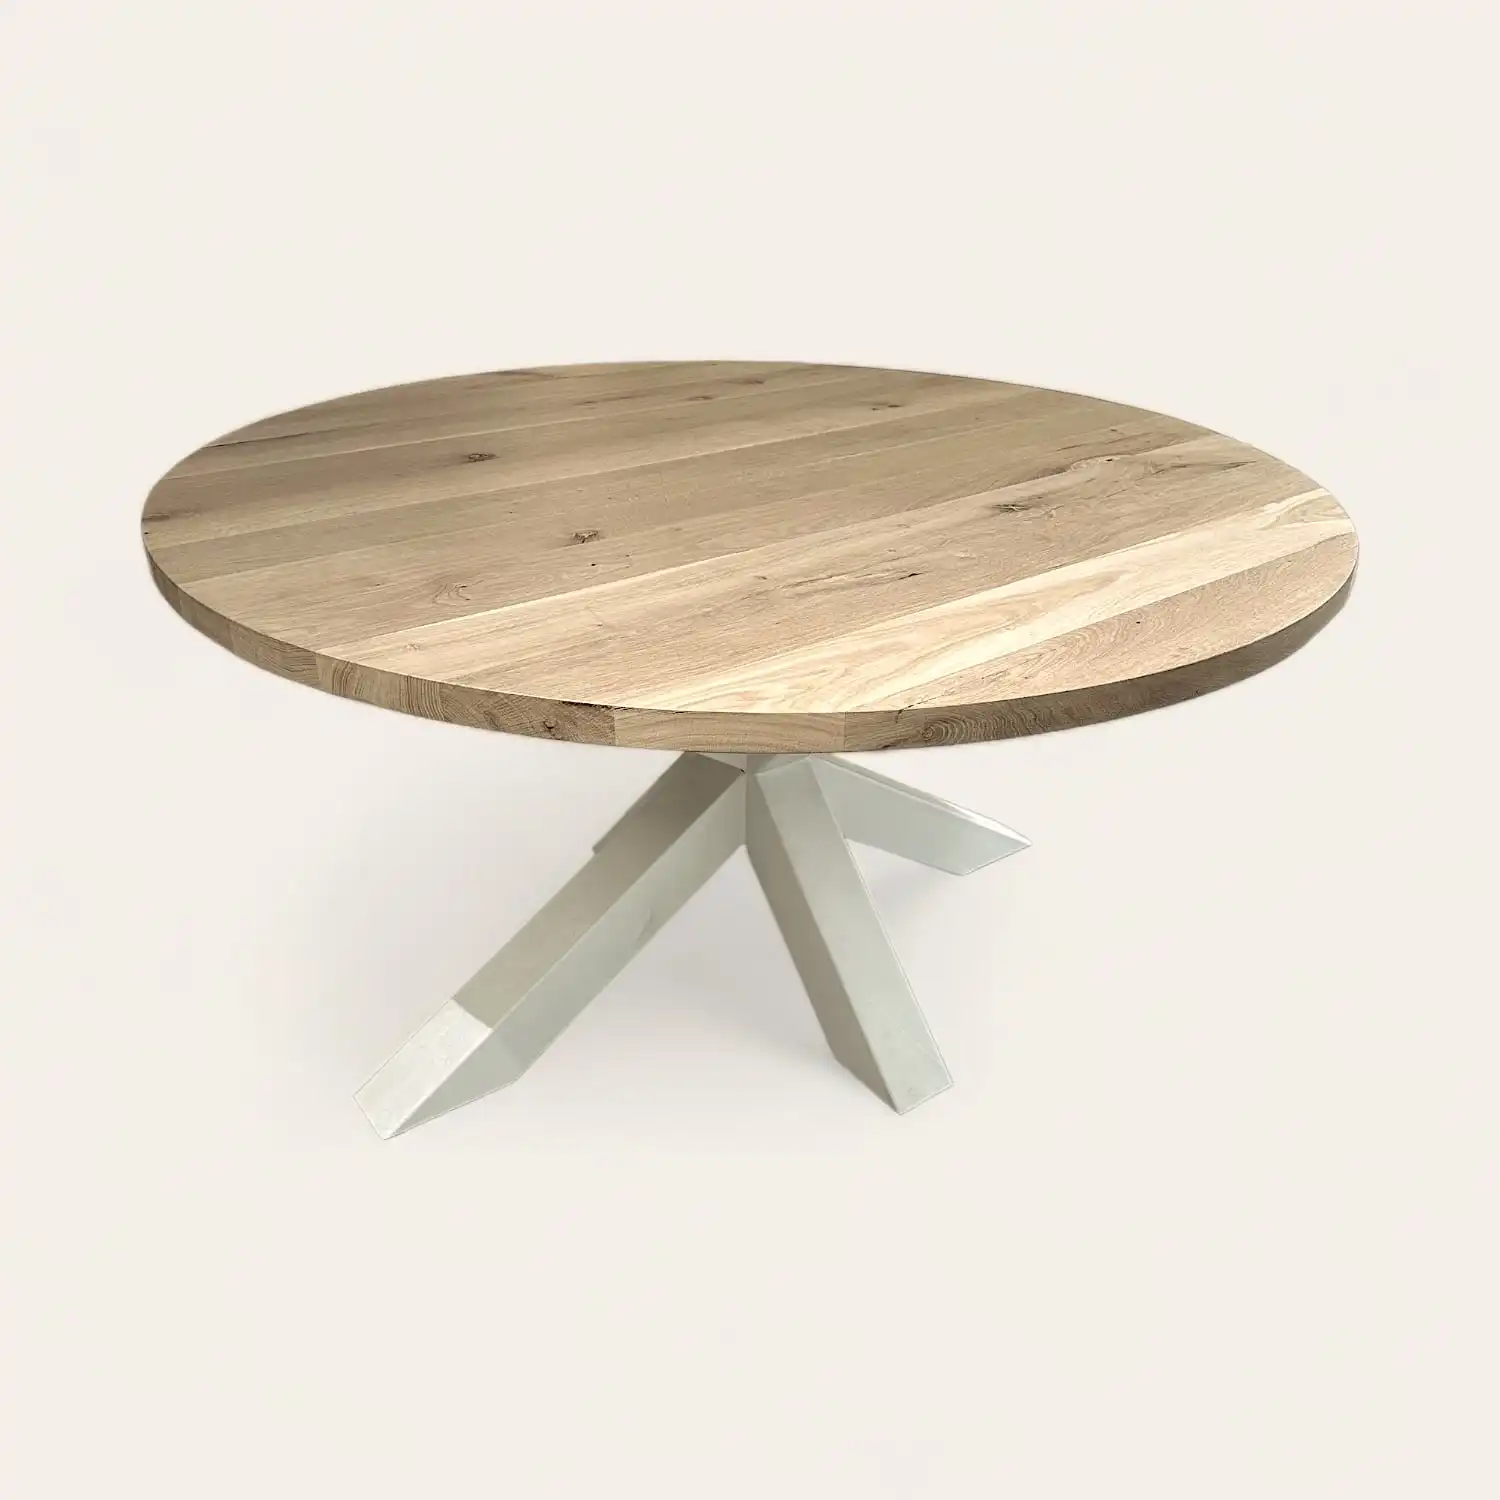  Une table ronde en bois rustique avec une base blanche. 